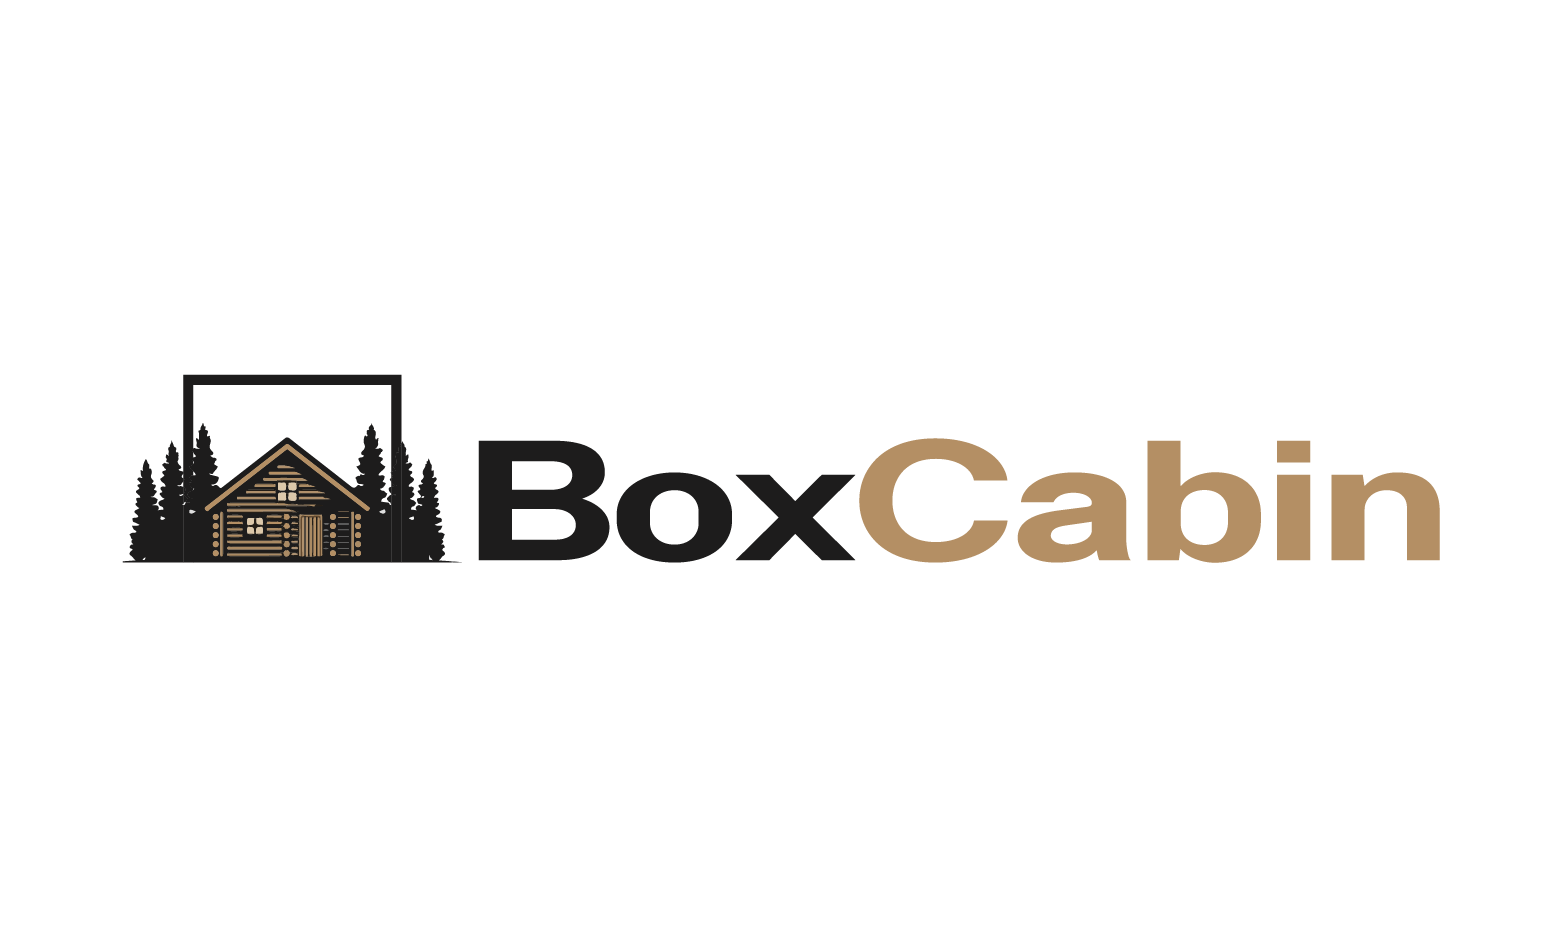 BoxCabin.com - Creative brandable domain for sale